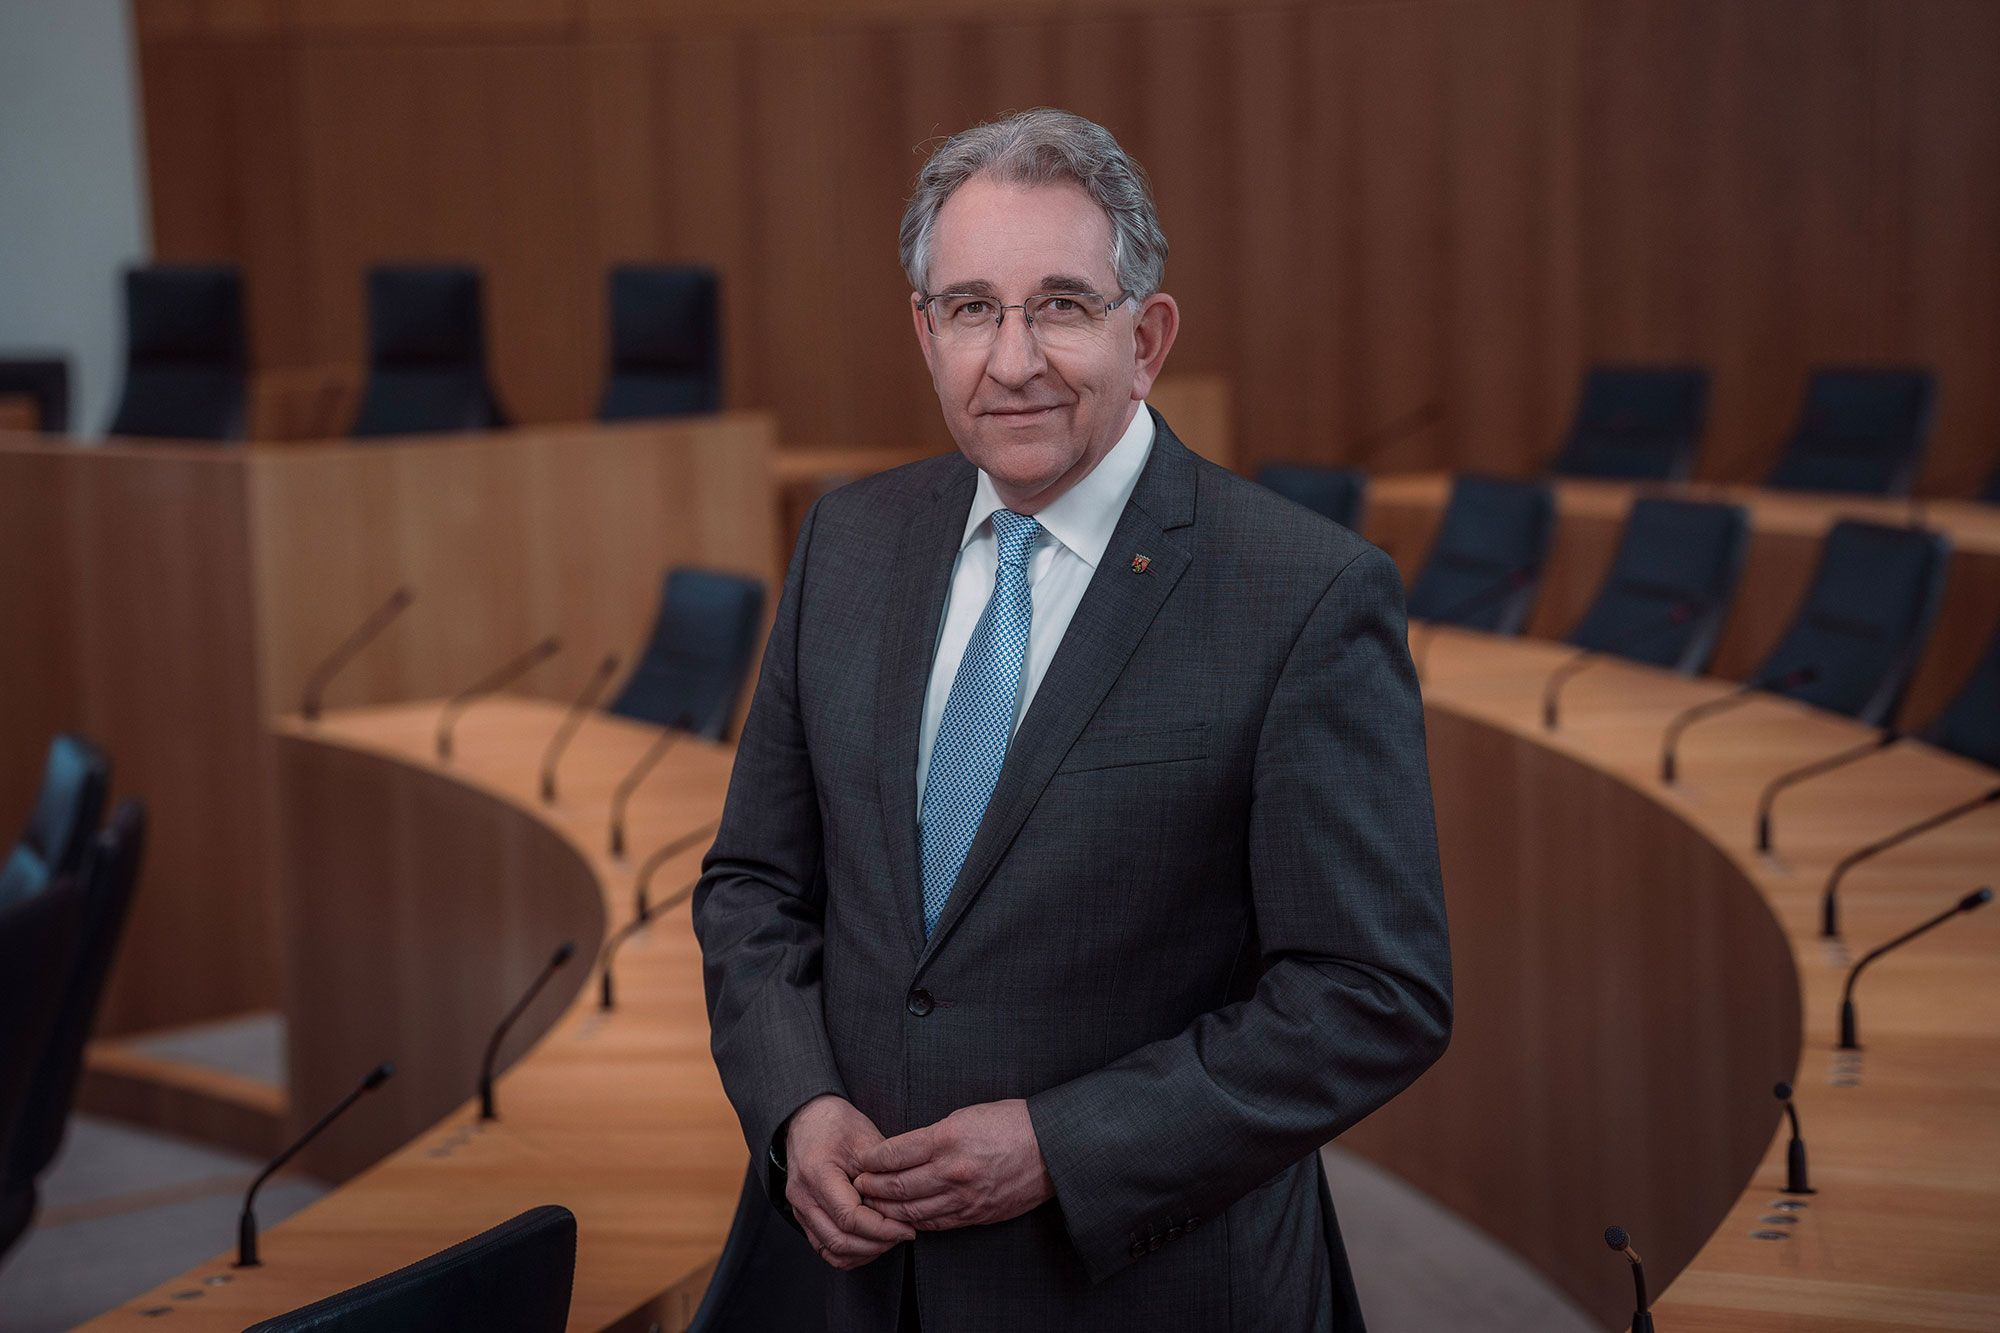 Der Vizepräsident des Landtags Rheinland-Pfalz, Matthias Lammert. Das Foto ist horizontal ausgerichtet. Der Vizepräsident steht lächelnd zwischen den Stuhlreihen des Plenarsaals.